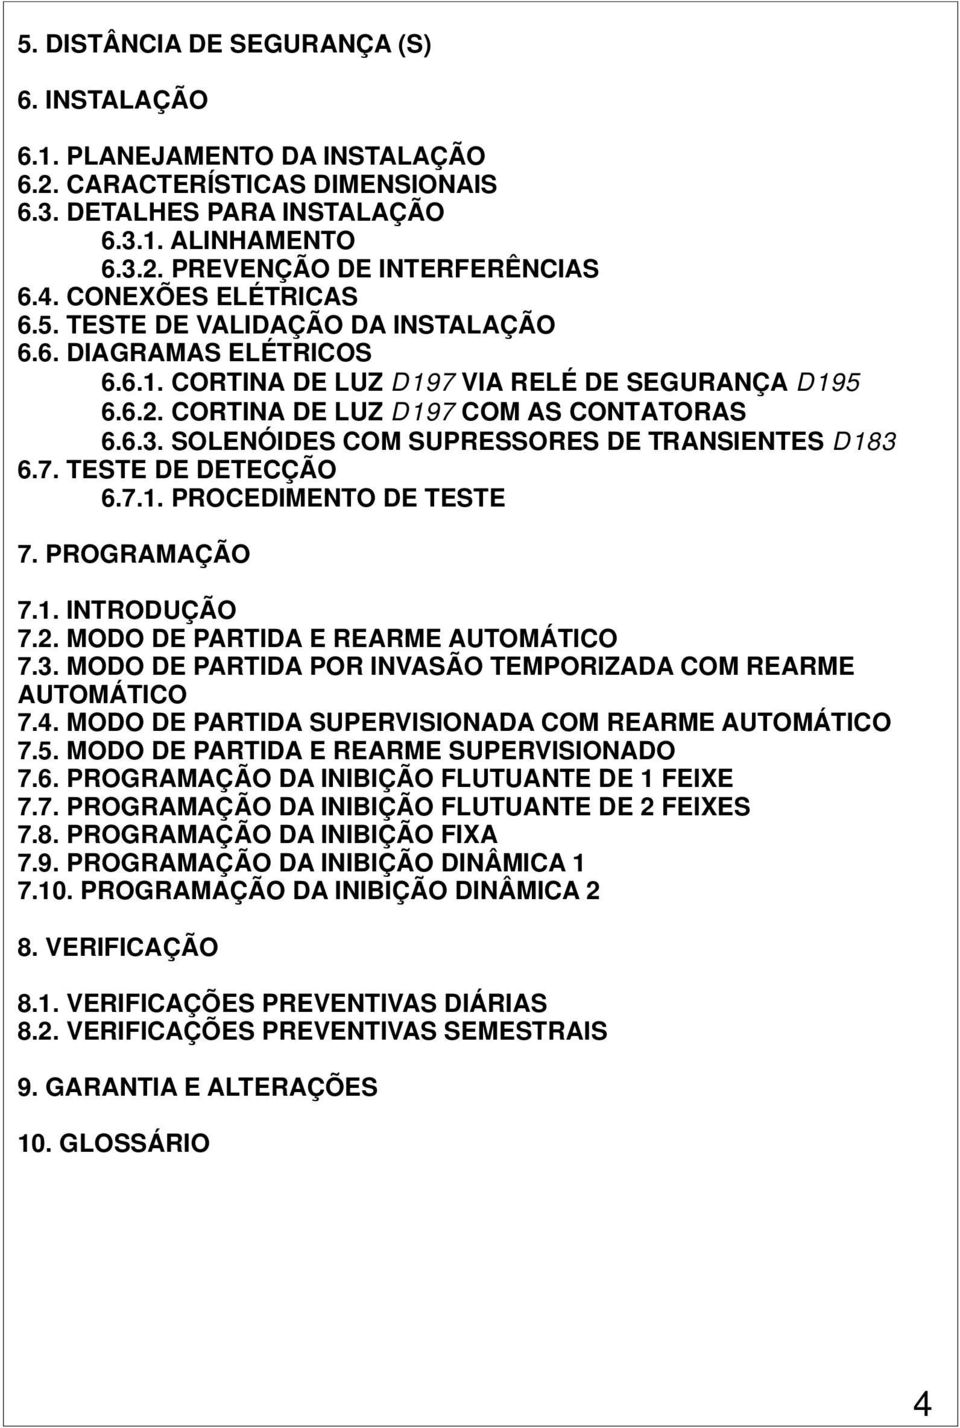 SOLENÓIDES COM SUPRESSORES DE TRANSIENTES D183 6.7. TESTE DE DETECÇÃO 6.7.1. PROCEDIMENTO DE TESTE 7. PROGRAMAÇÃO 7.1. INTRODUÇÃO 7.2. MODO DE PARTIDA E REARME AUTOMÁTICO 7.3. MODO DE PARTIDA POR INVASÃO TEMPORIZADA COM REARME AUTOMÁTICO 7.